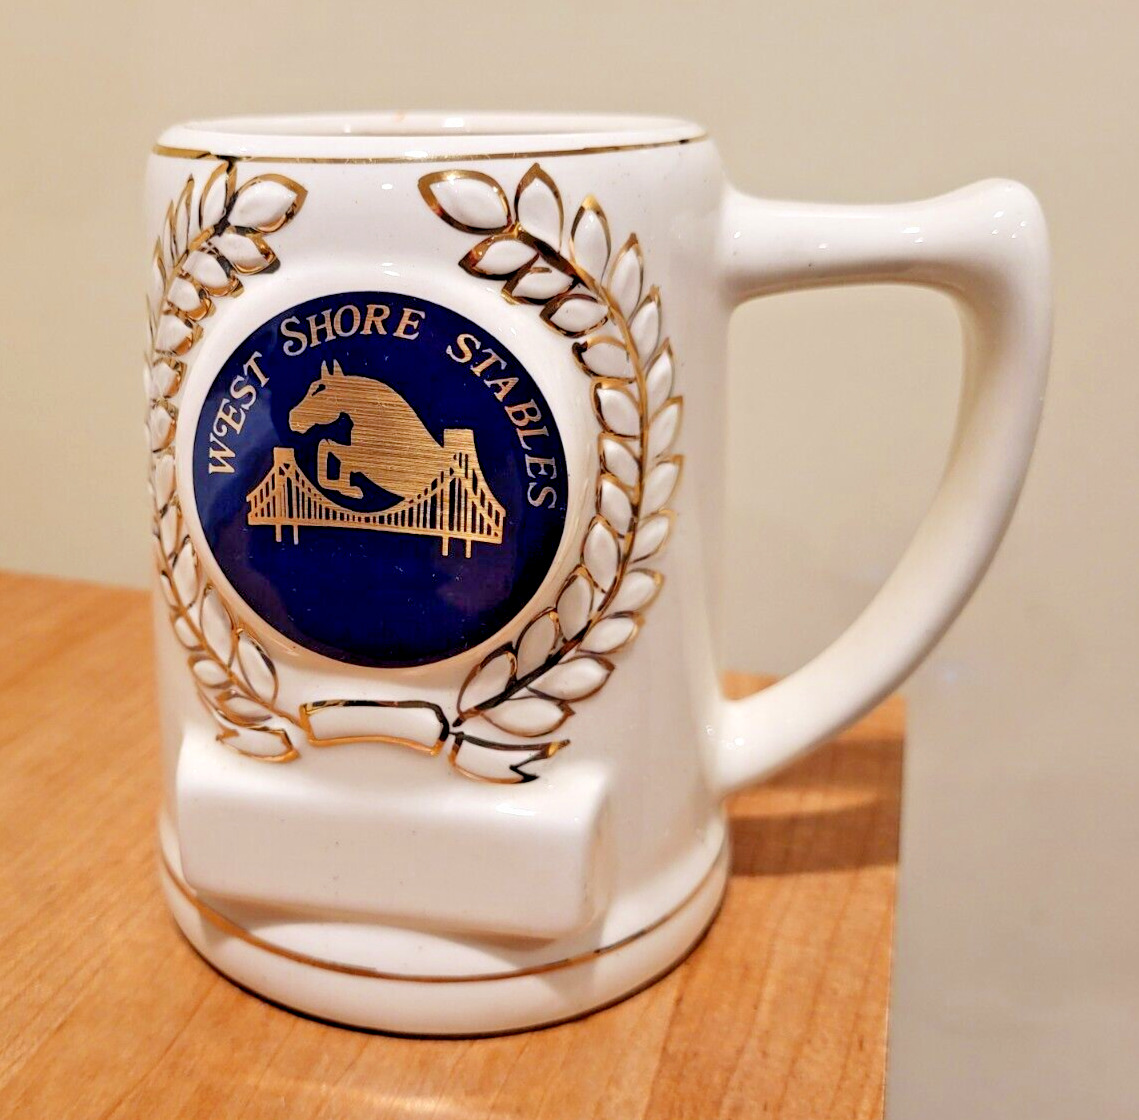 WEST SHORE STABLES  Gold Trim Ceramic Stein  STATEN ISLAND NEW YORK Crown Trophy